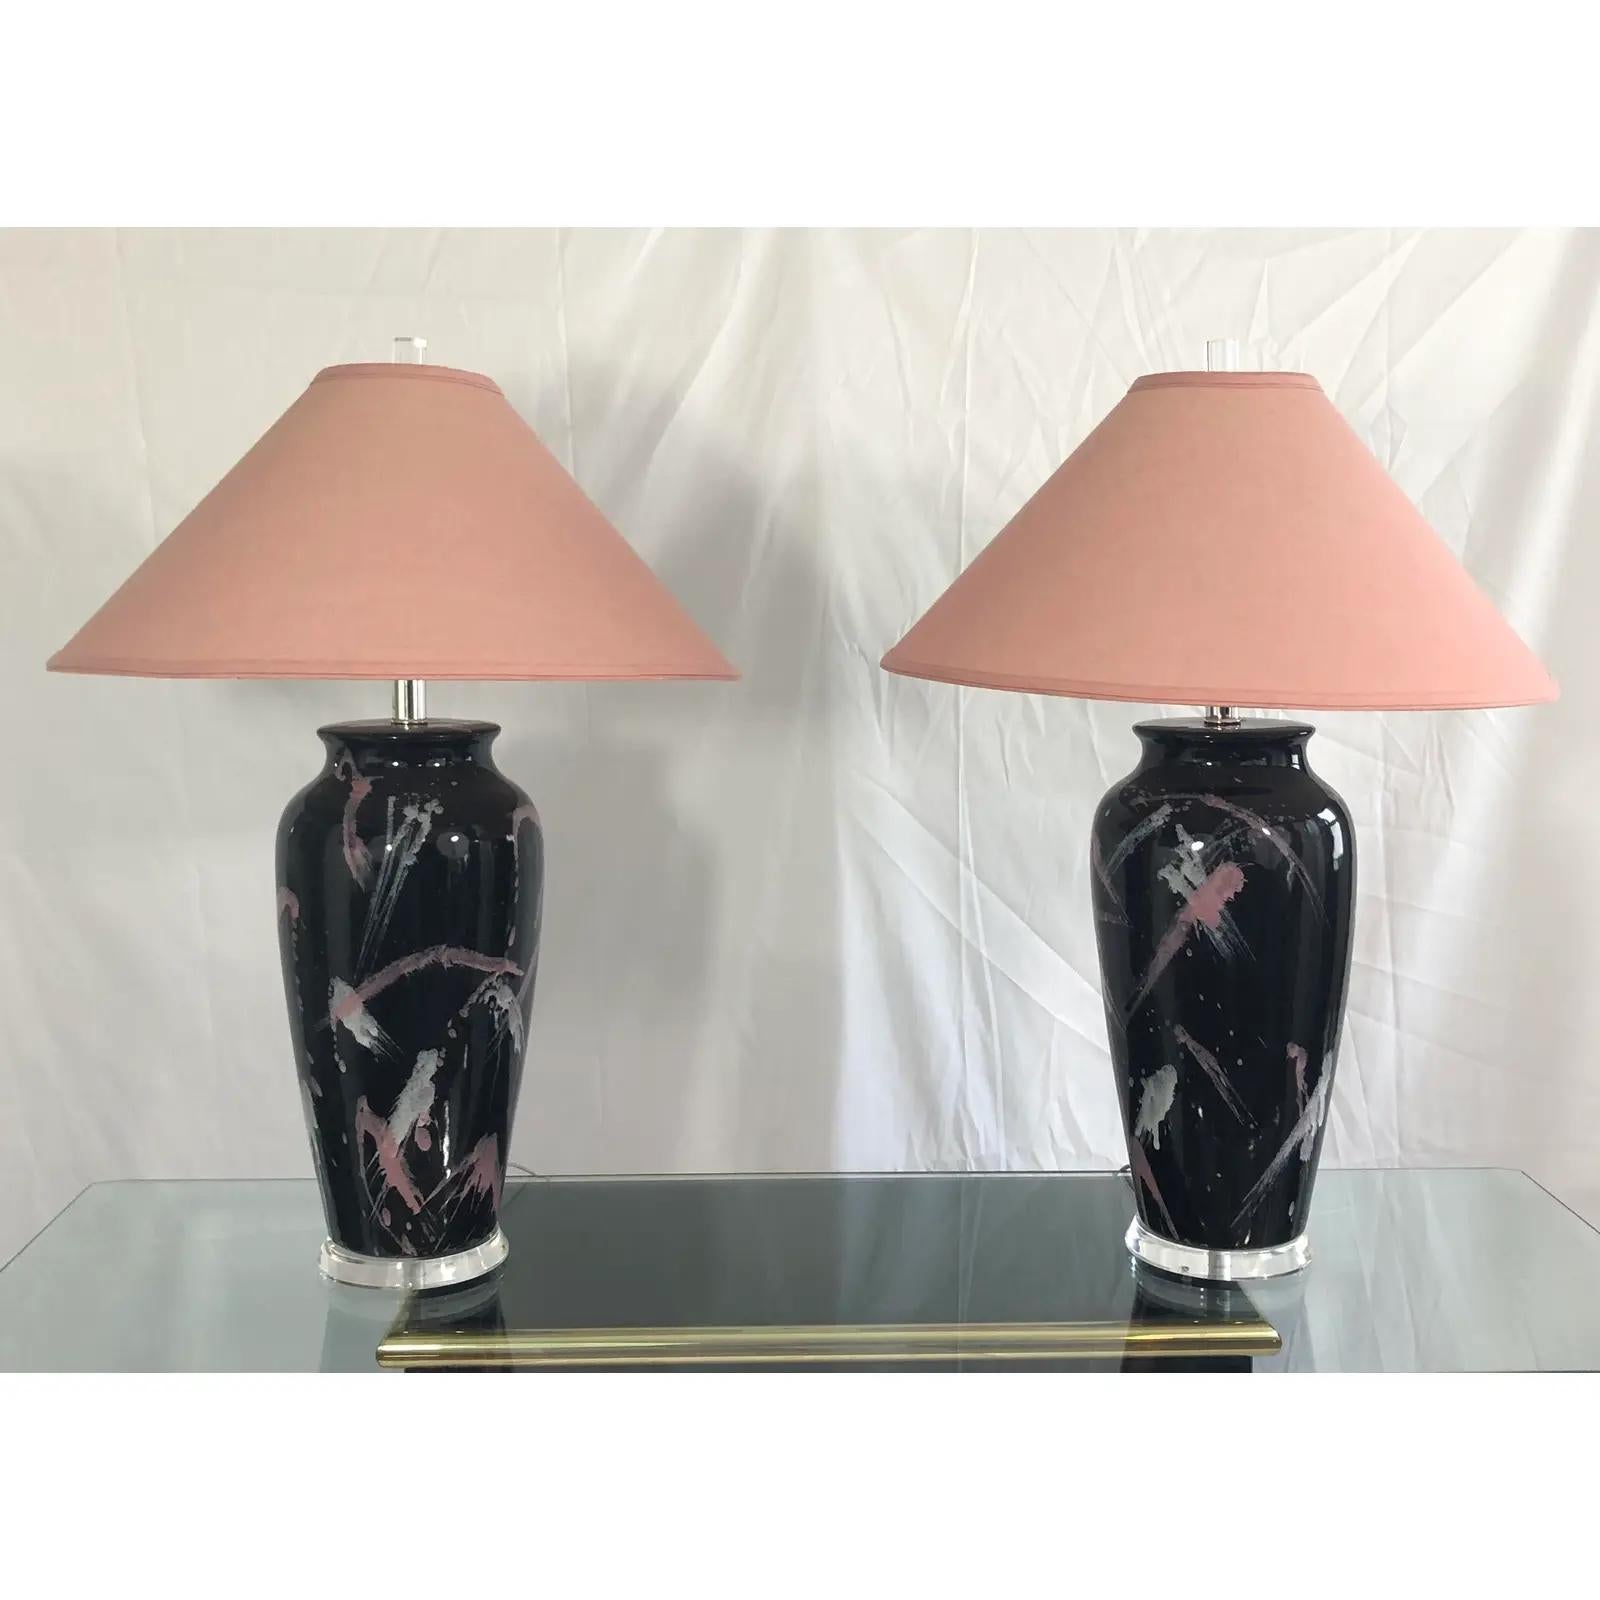 Ein Paar Vintage-Tischlampen im Stil von Jackson Pollock mit rosa und weißer grafischer Spritzglasur auf schwarzem Finish. Höhe bis zur Spitze des Sockels ist ca. 20